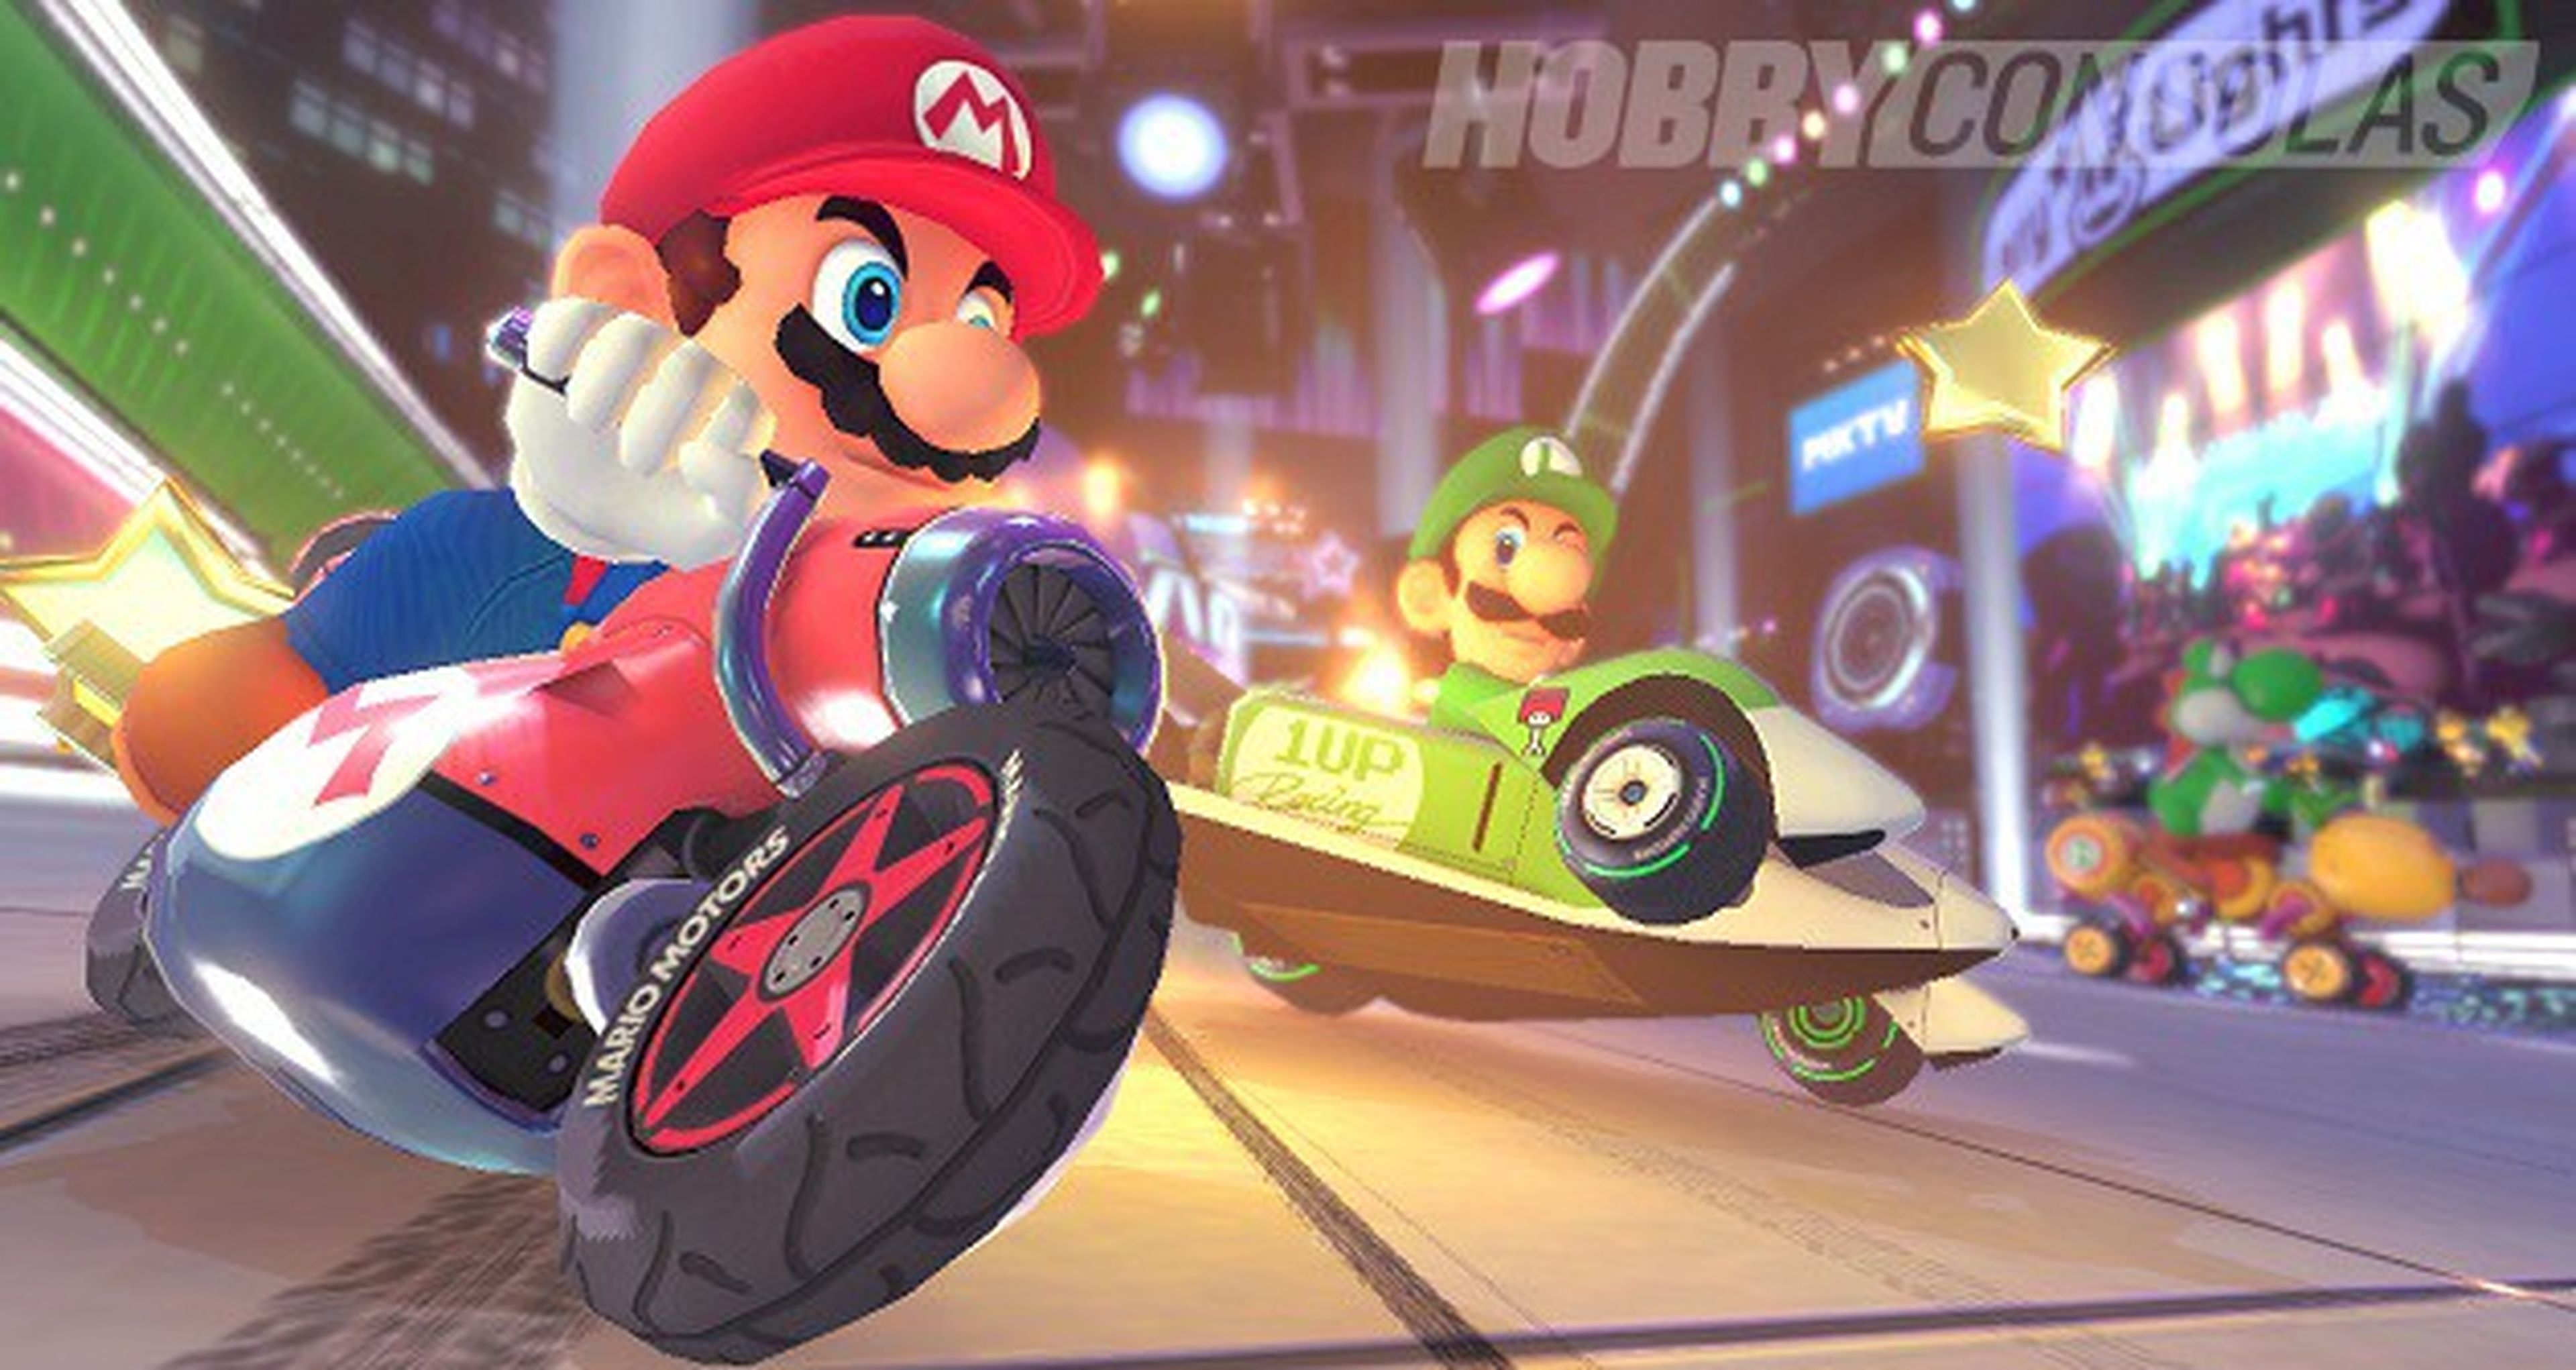 Mario Kart 8 - ¿Nuevo contenido en camino?